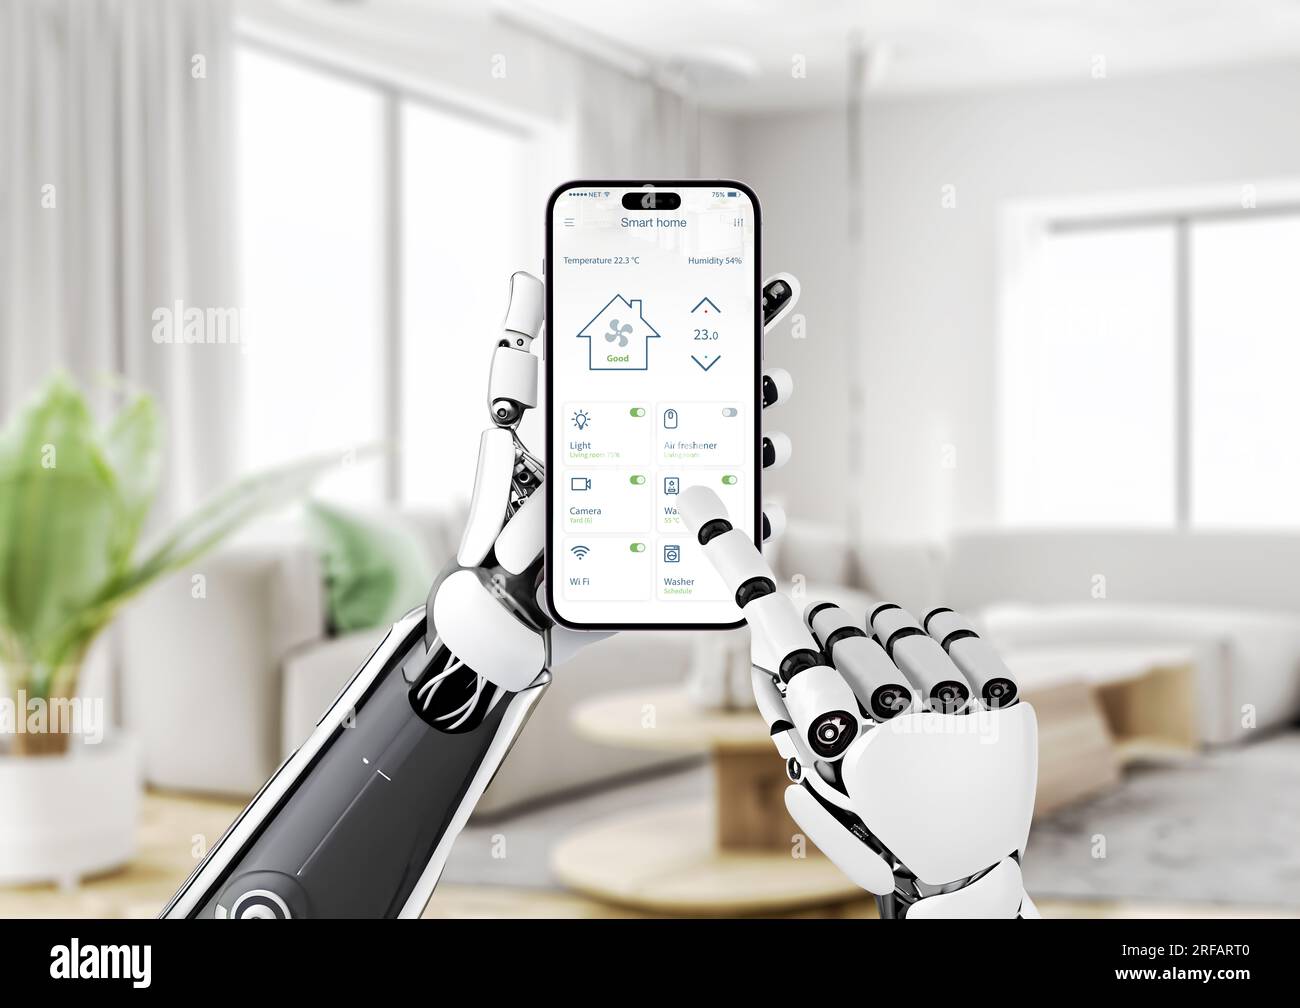 Il robot controlla la temperatura e altri parametri della casa intelligente con l'app mobile. Il concetto di sviluppo tecnologico e gestione dei servizi Foto Stock